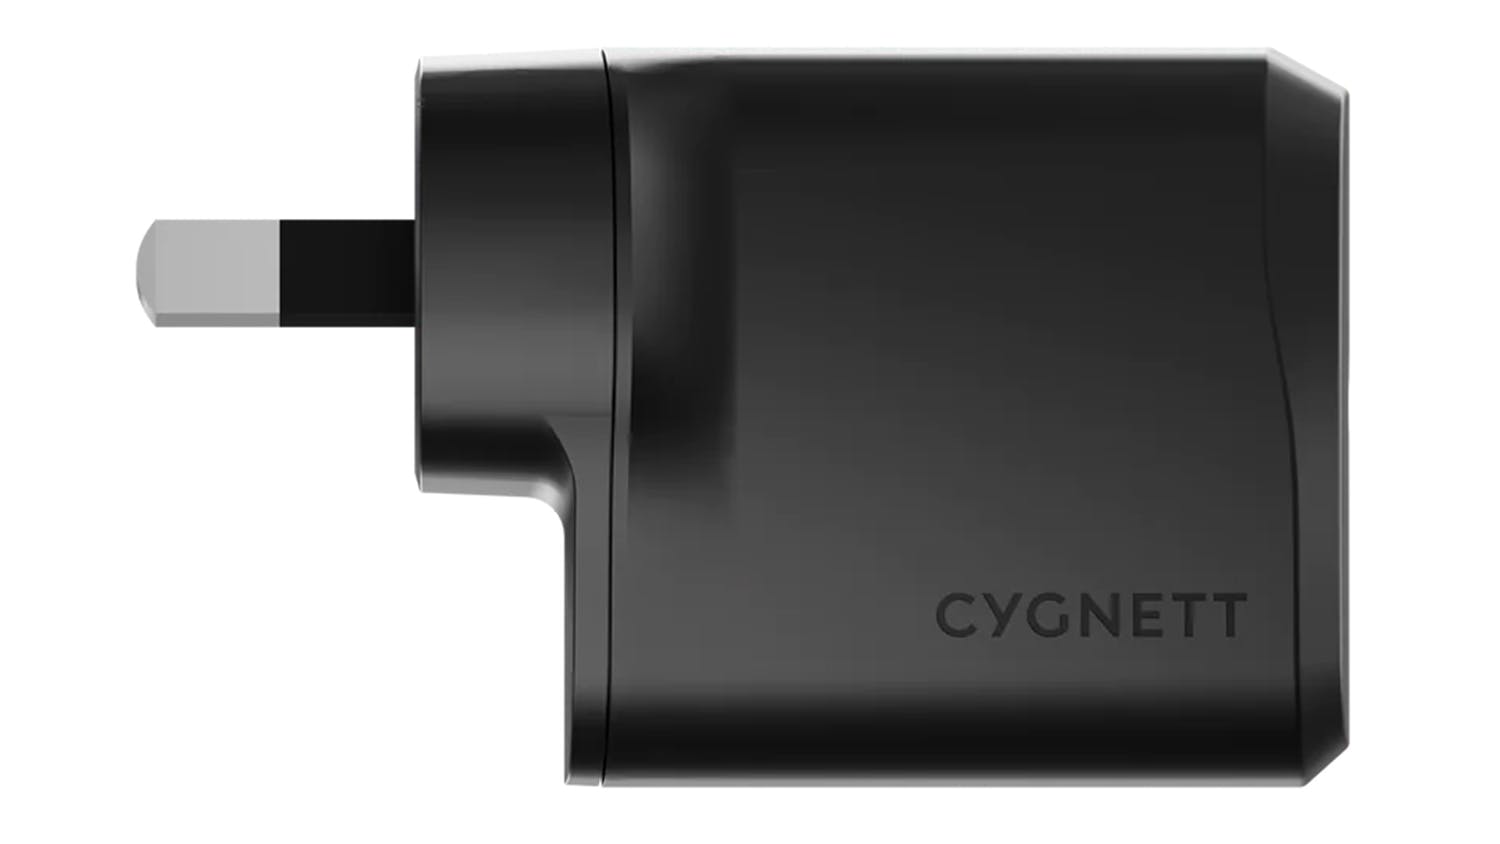 Cygnett Powerplus 20W USB-C AU Wall Charger - Black (CY4733PDWCH)